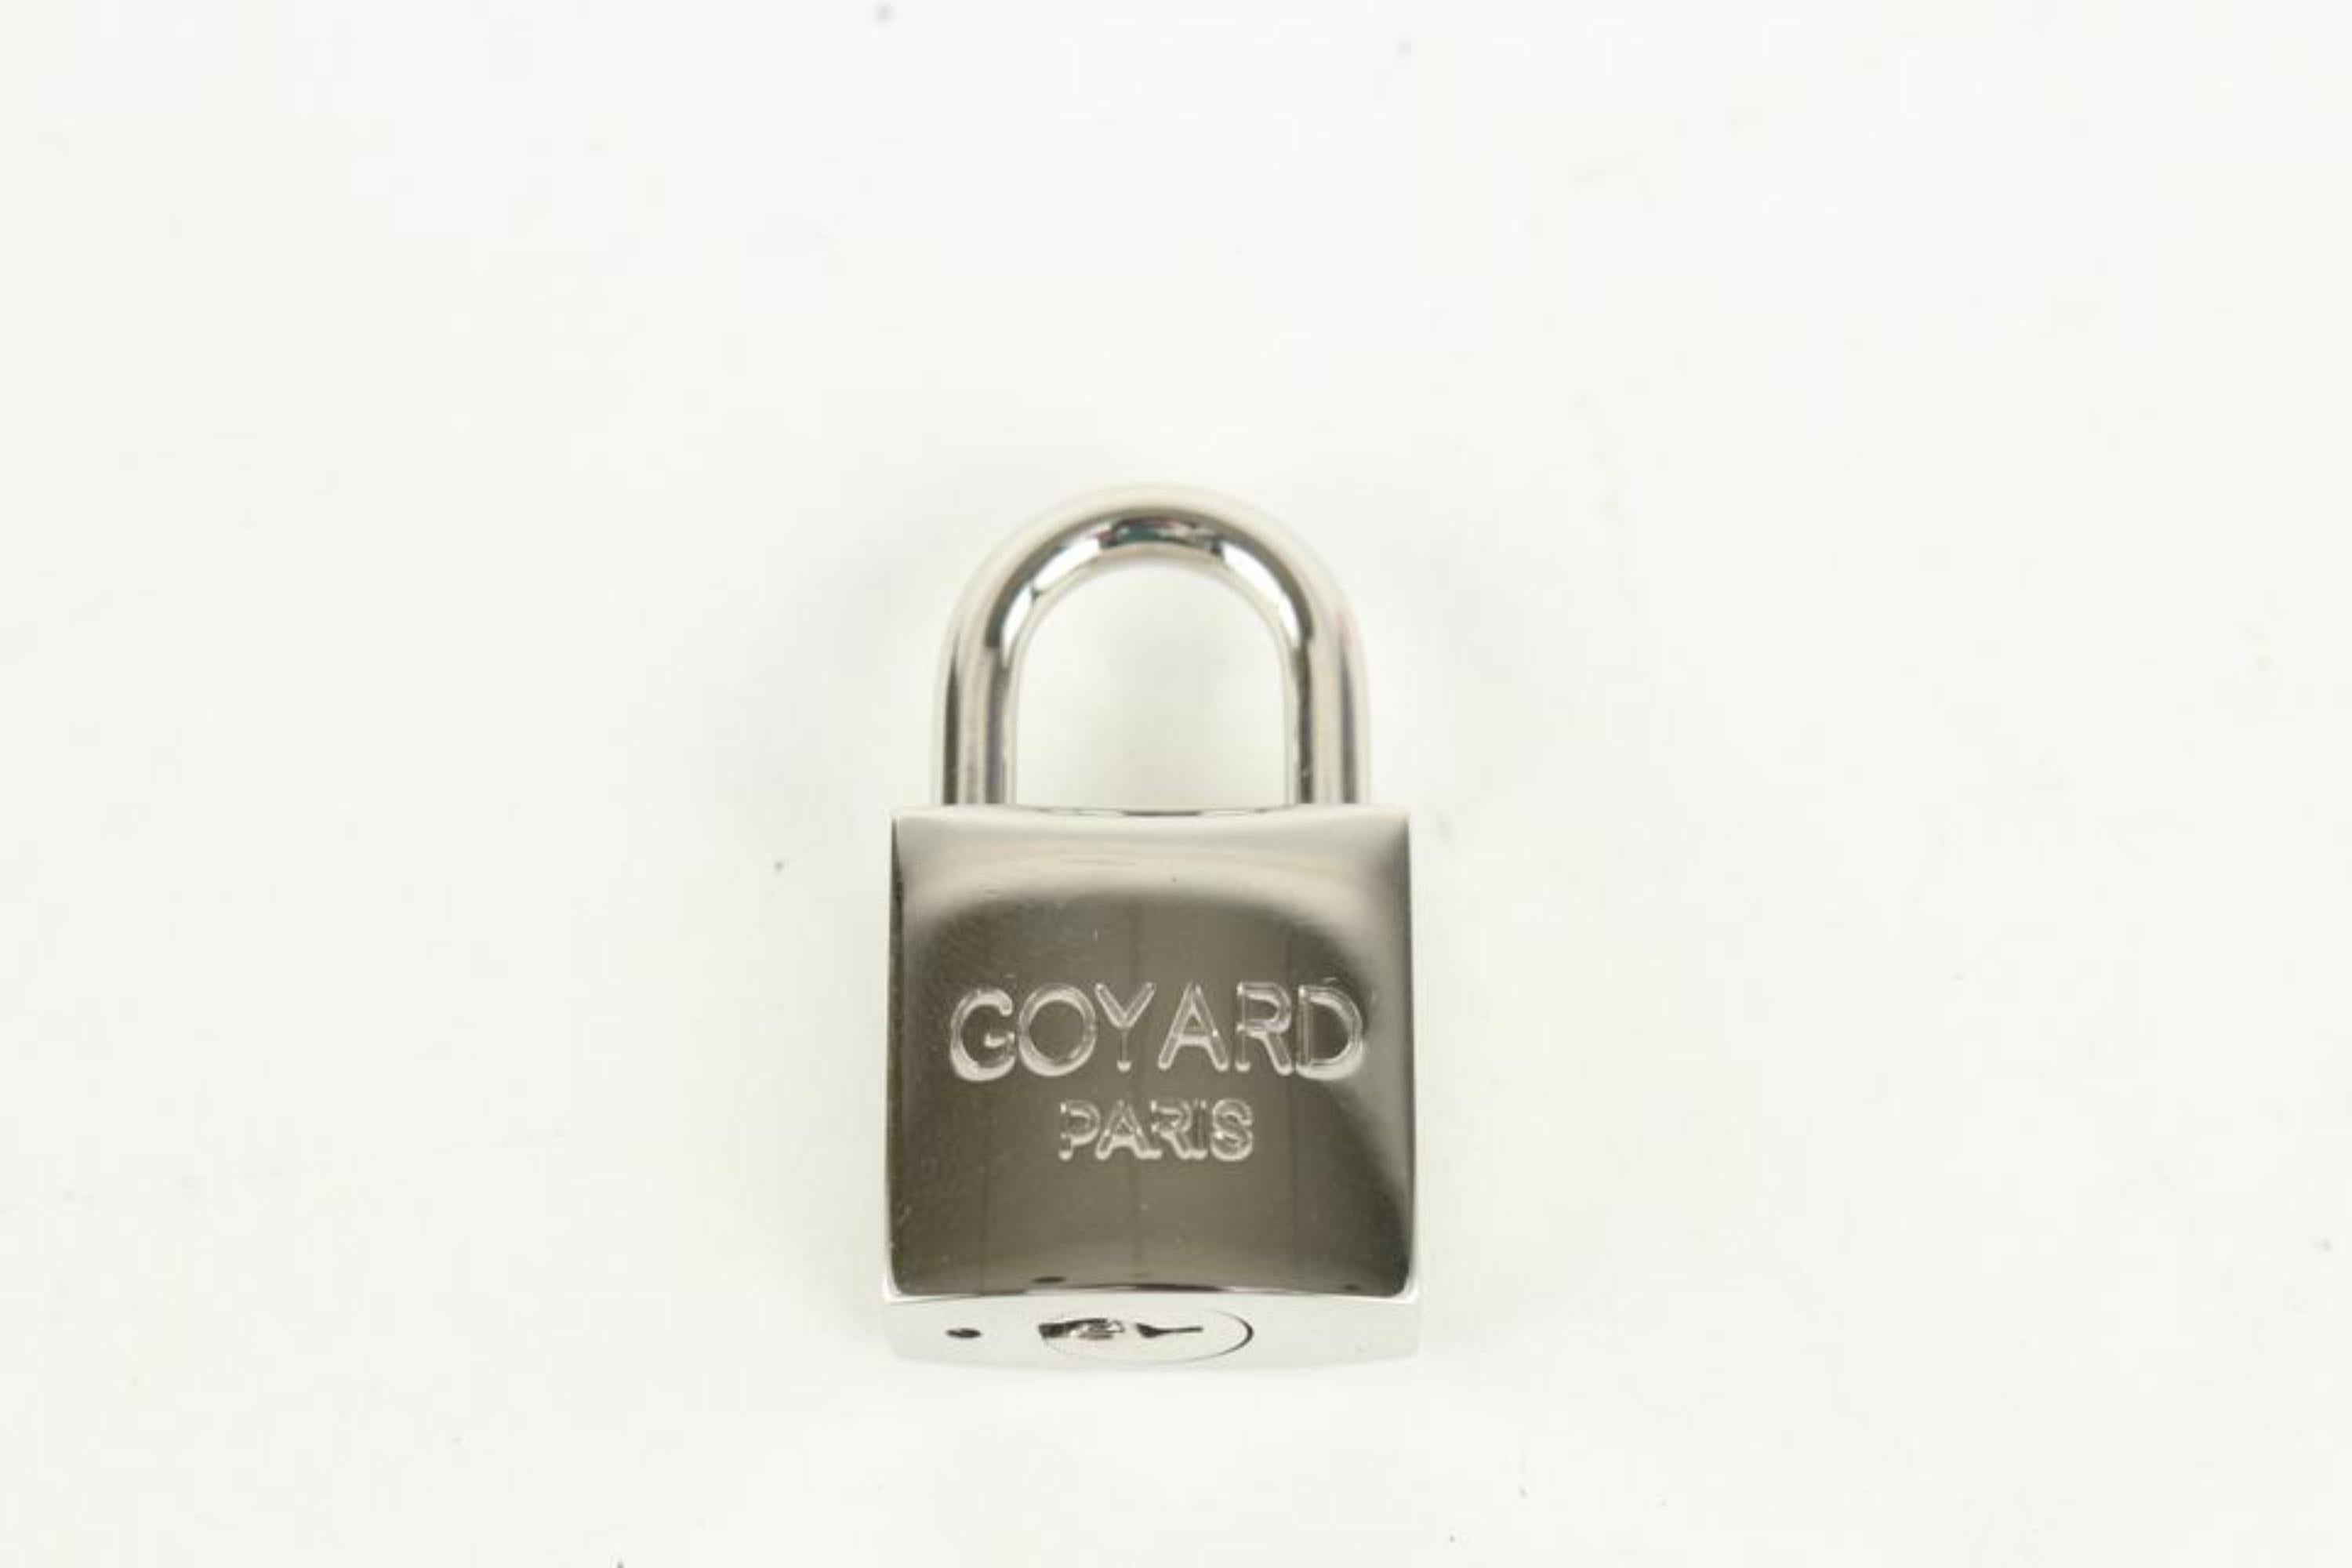 Goyard Silver Lock and Key Set Cadena Bag Charm 1012gy30 5